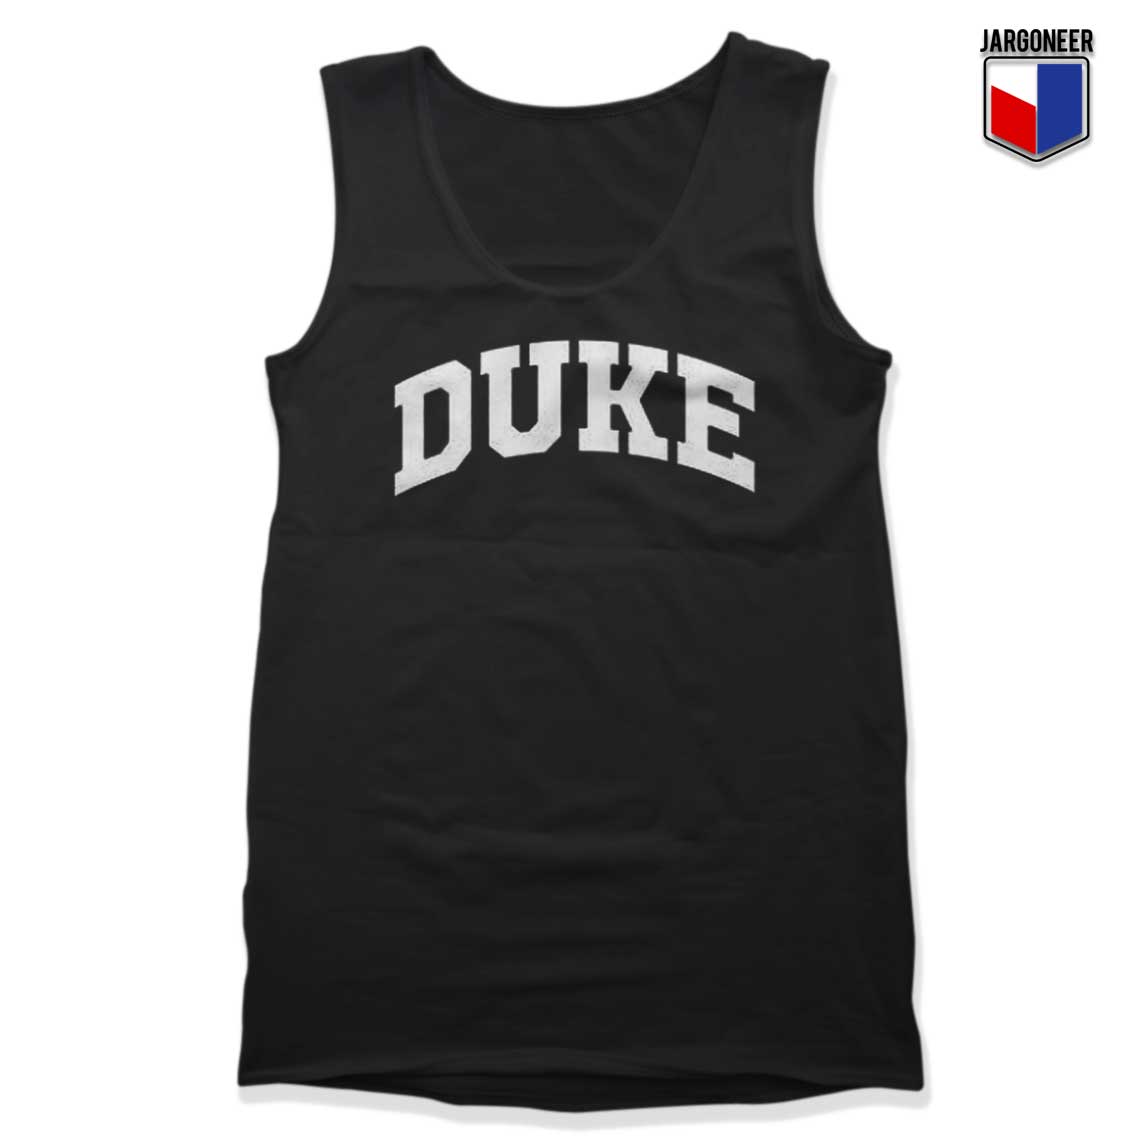 Duke University Tank Top - Shop Unique Graphic Cool Shirt Designs